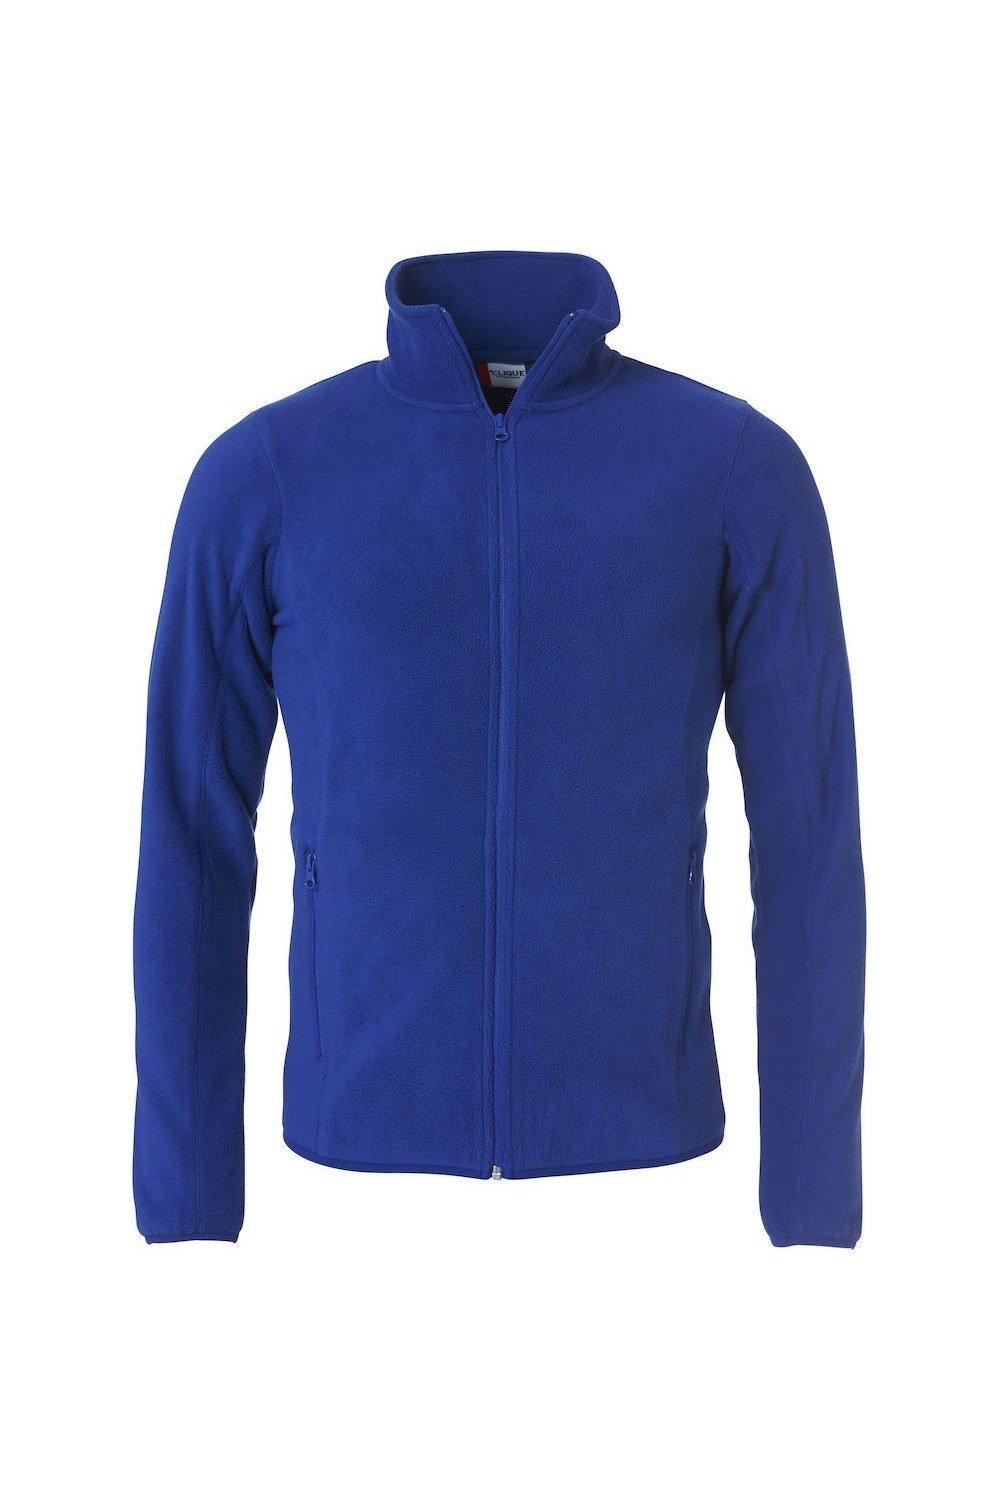 Базовая флисовая куртка Clique, синий